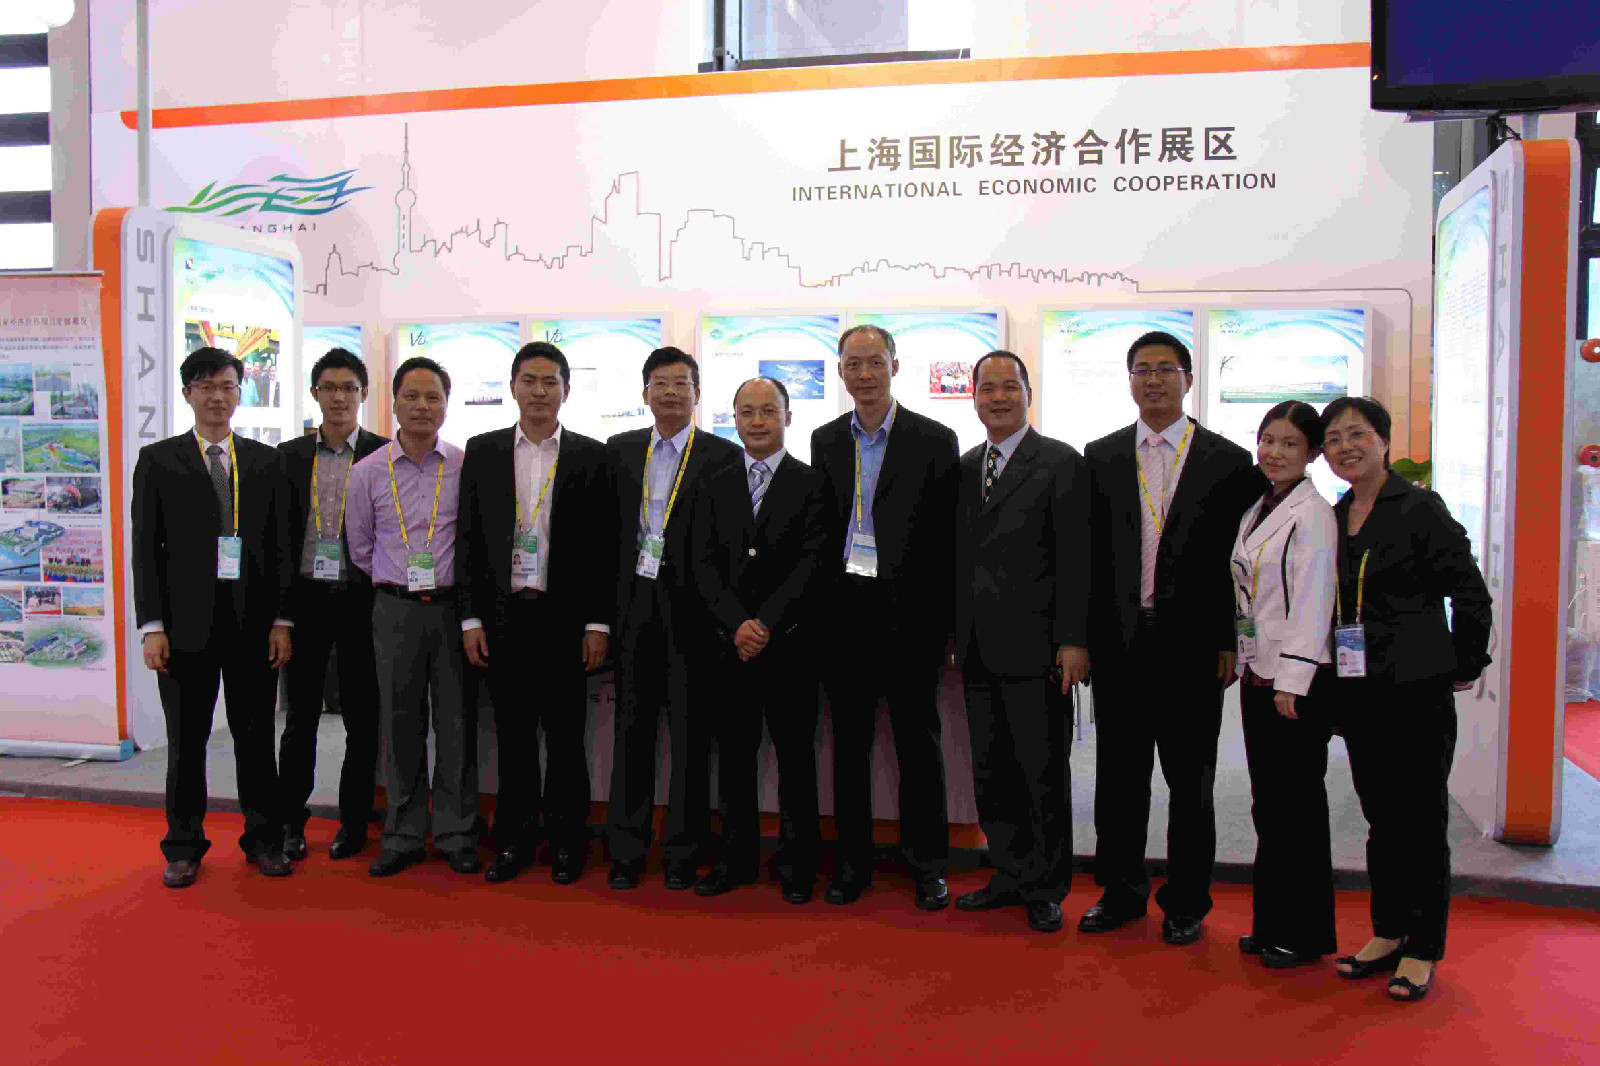 上海國際經濟技術合作協會